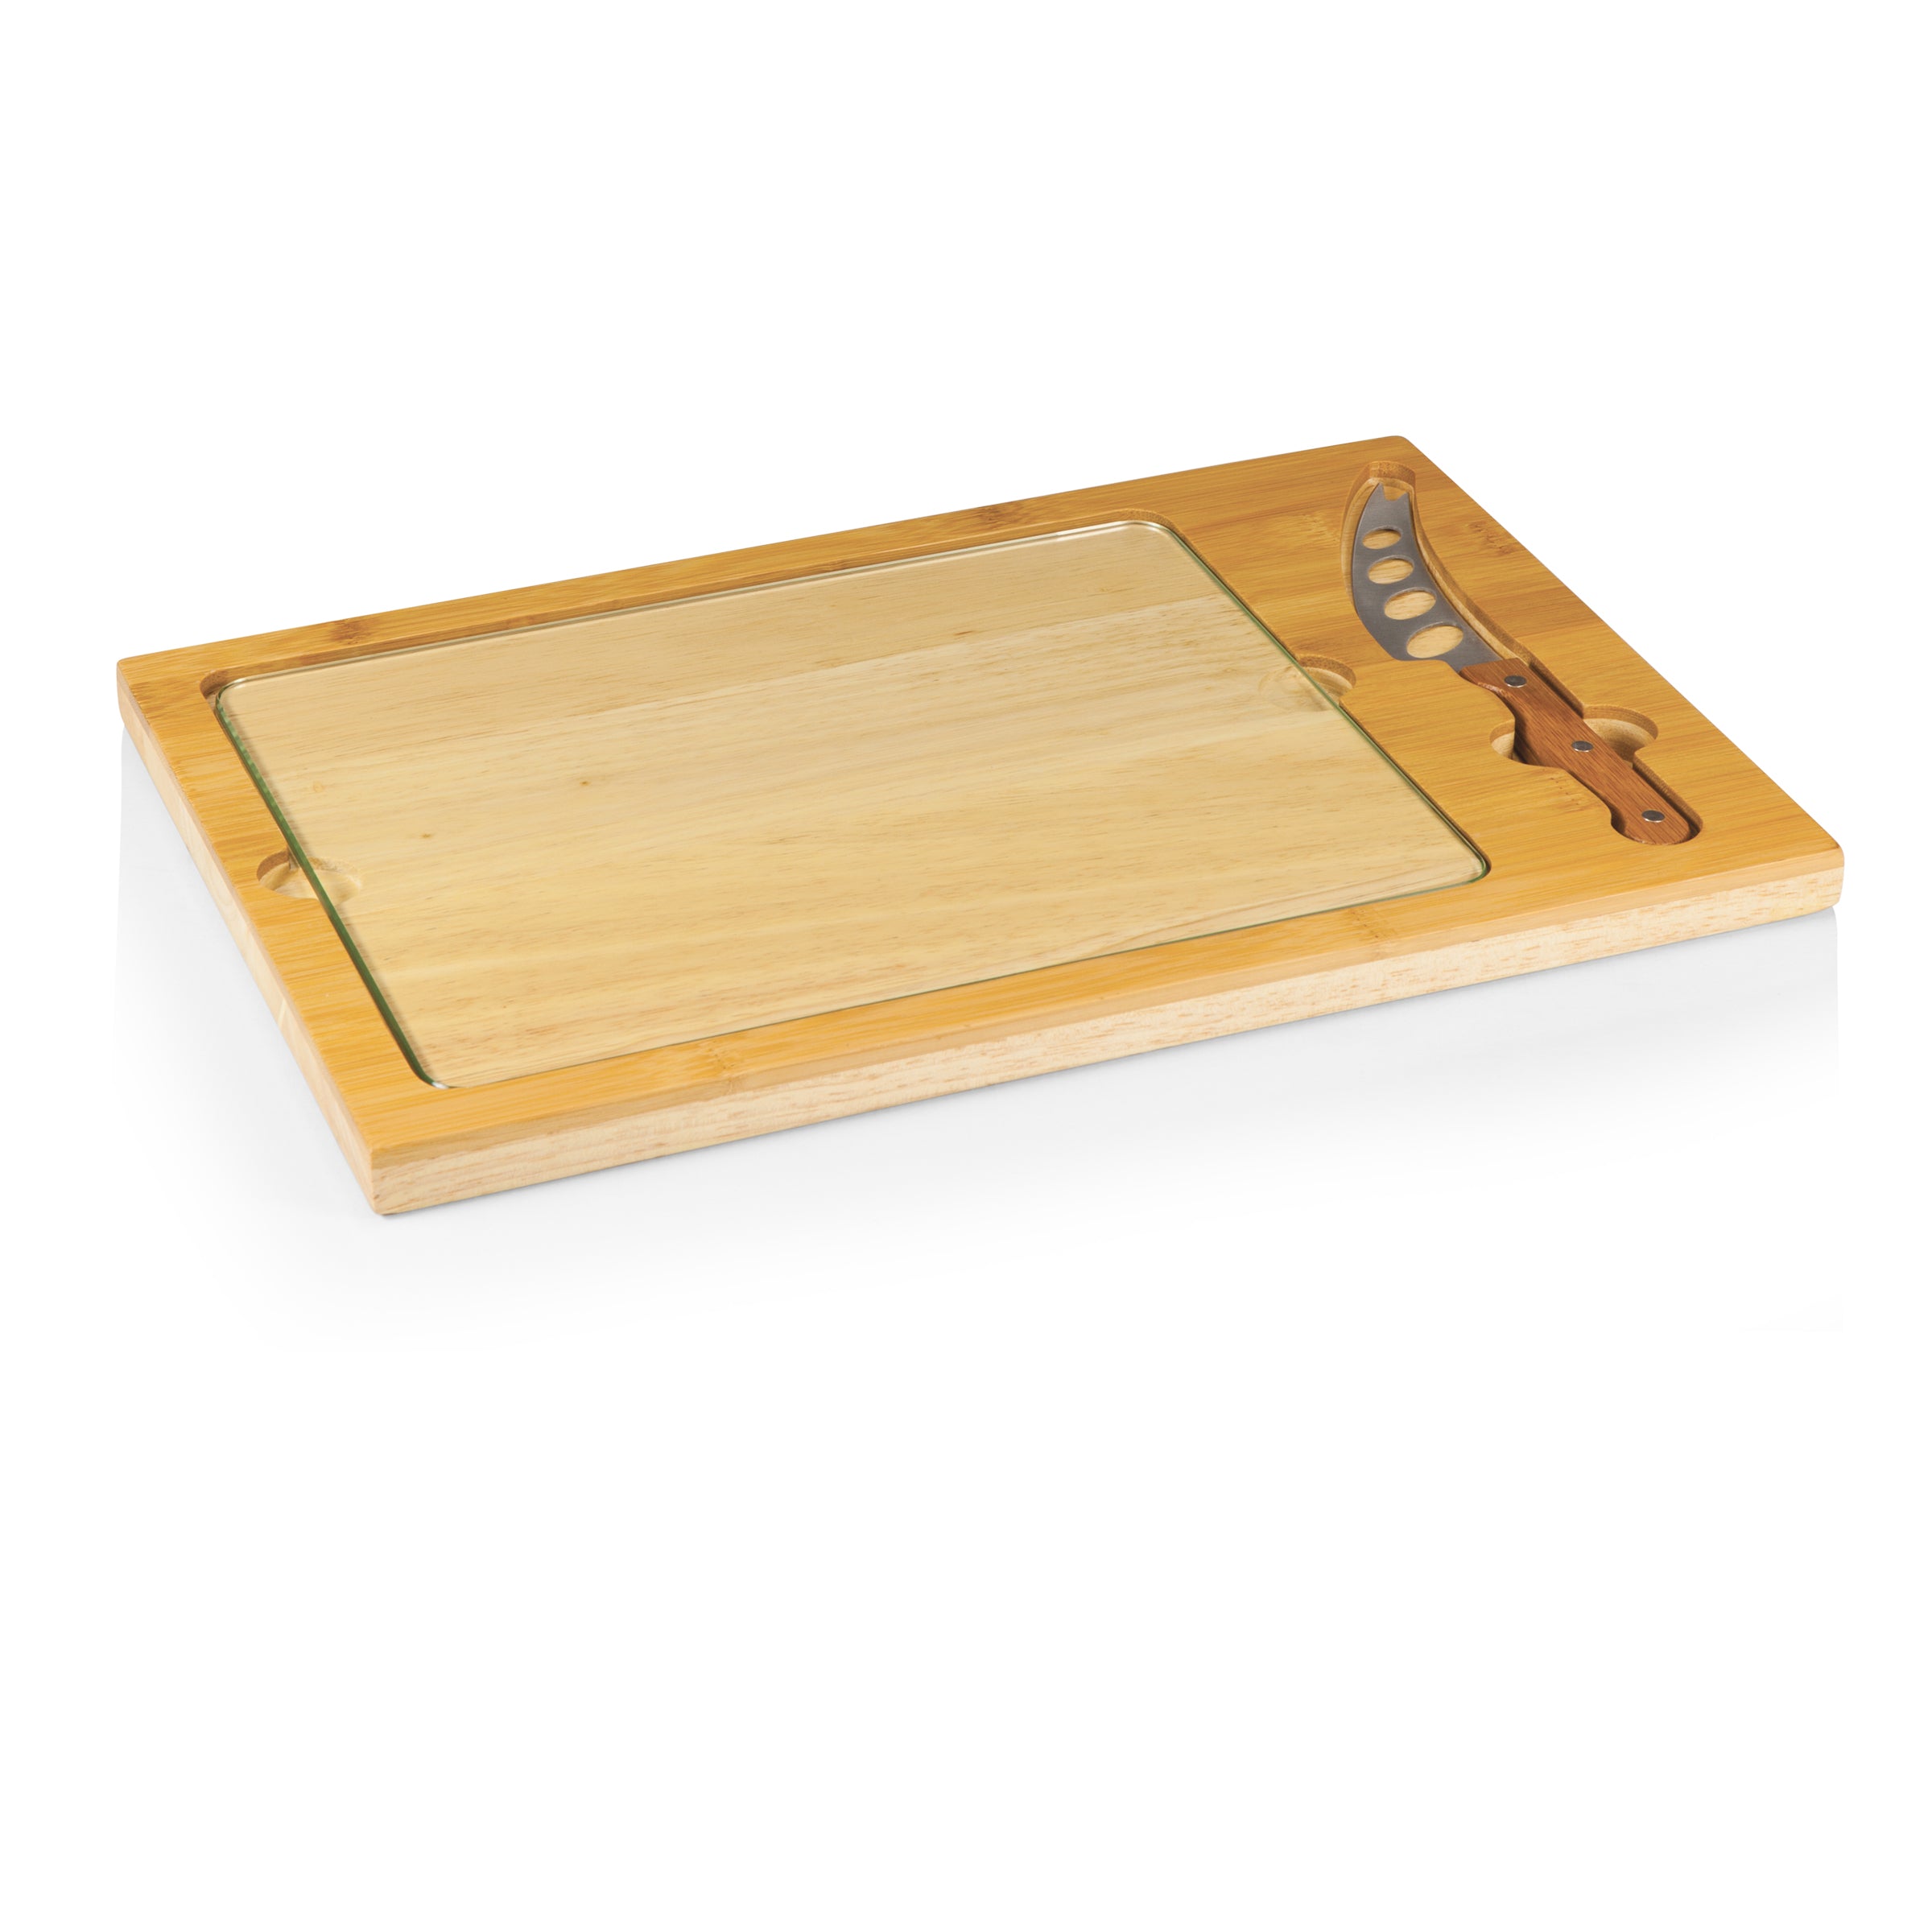 Hockey Rink - Seattle Kraken - Icon Glass Top Cutting Board & Knife Set